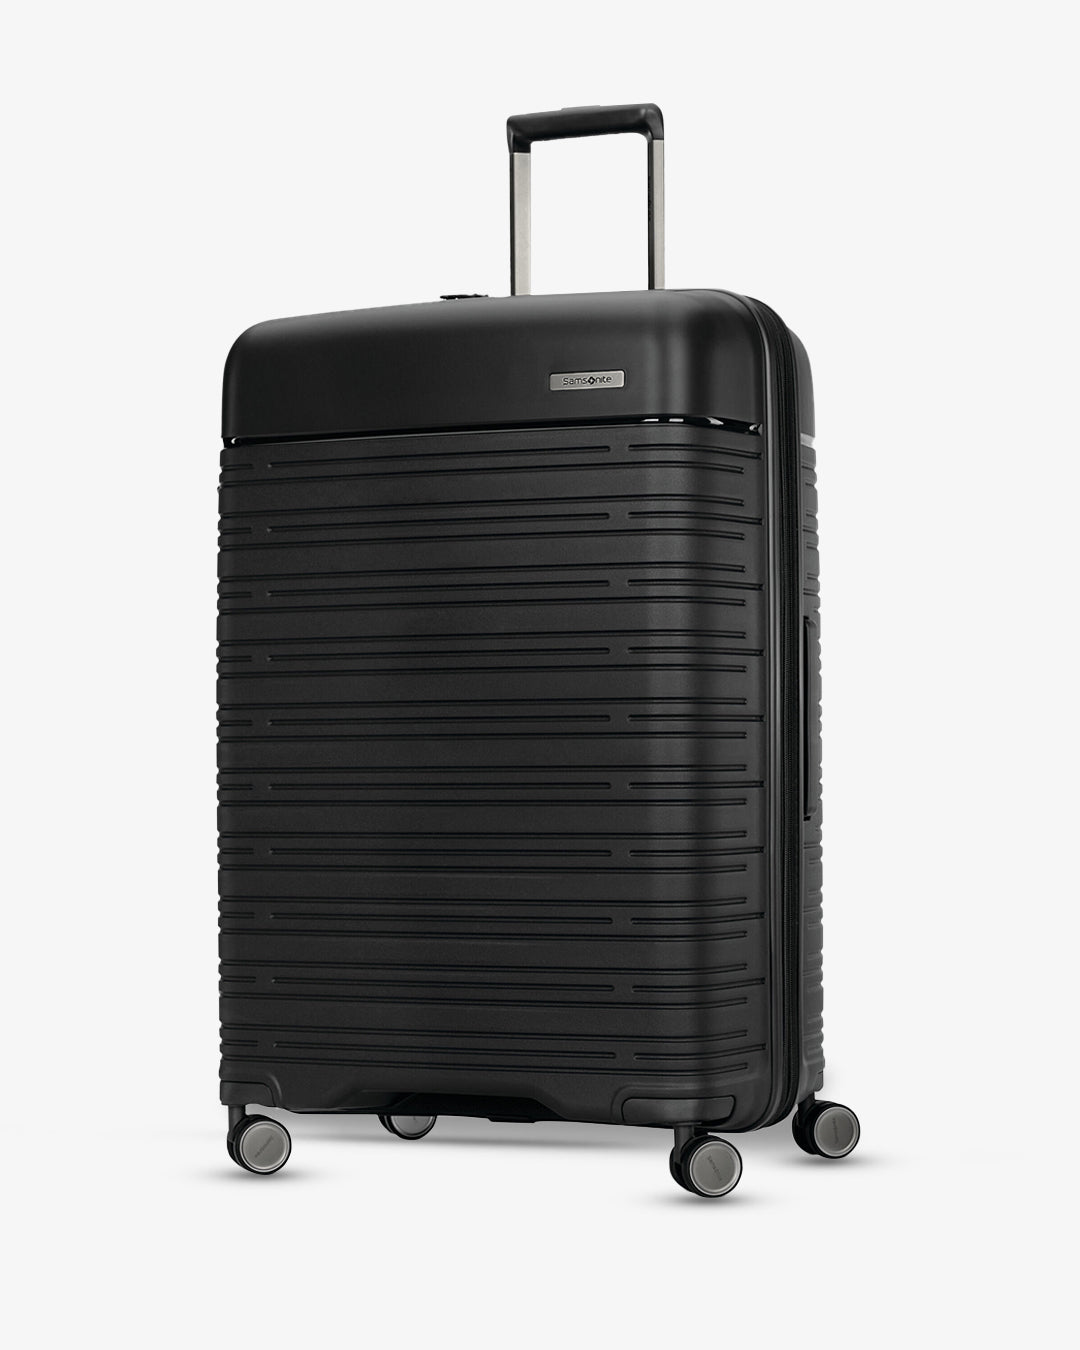 Samsonite Elevation Plus Luggage (LARGE)